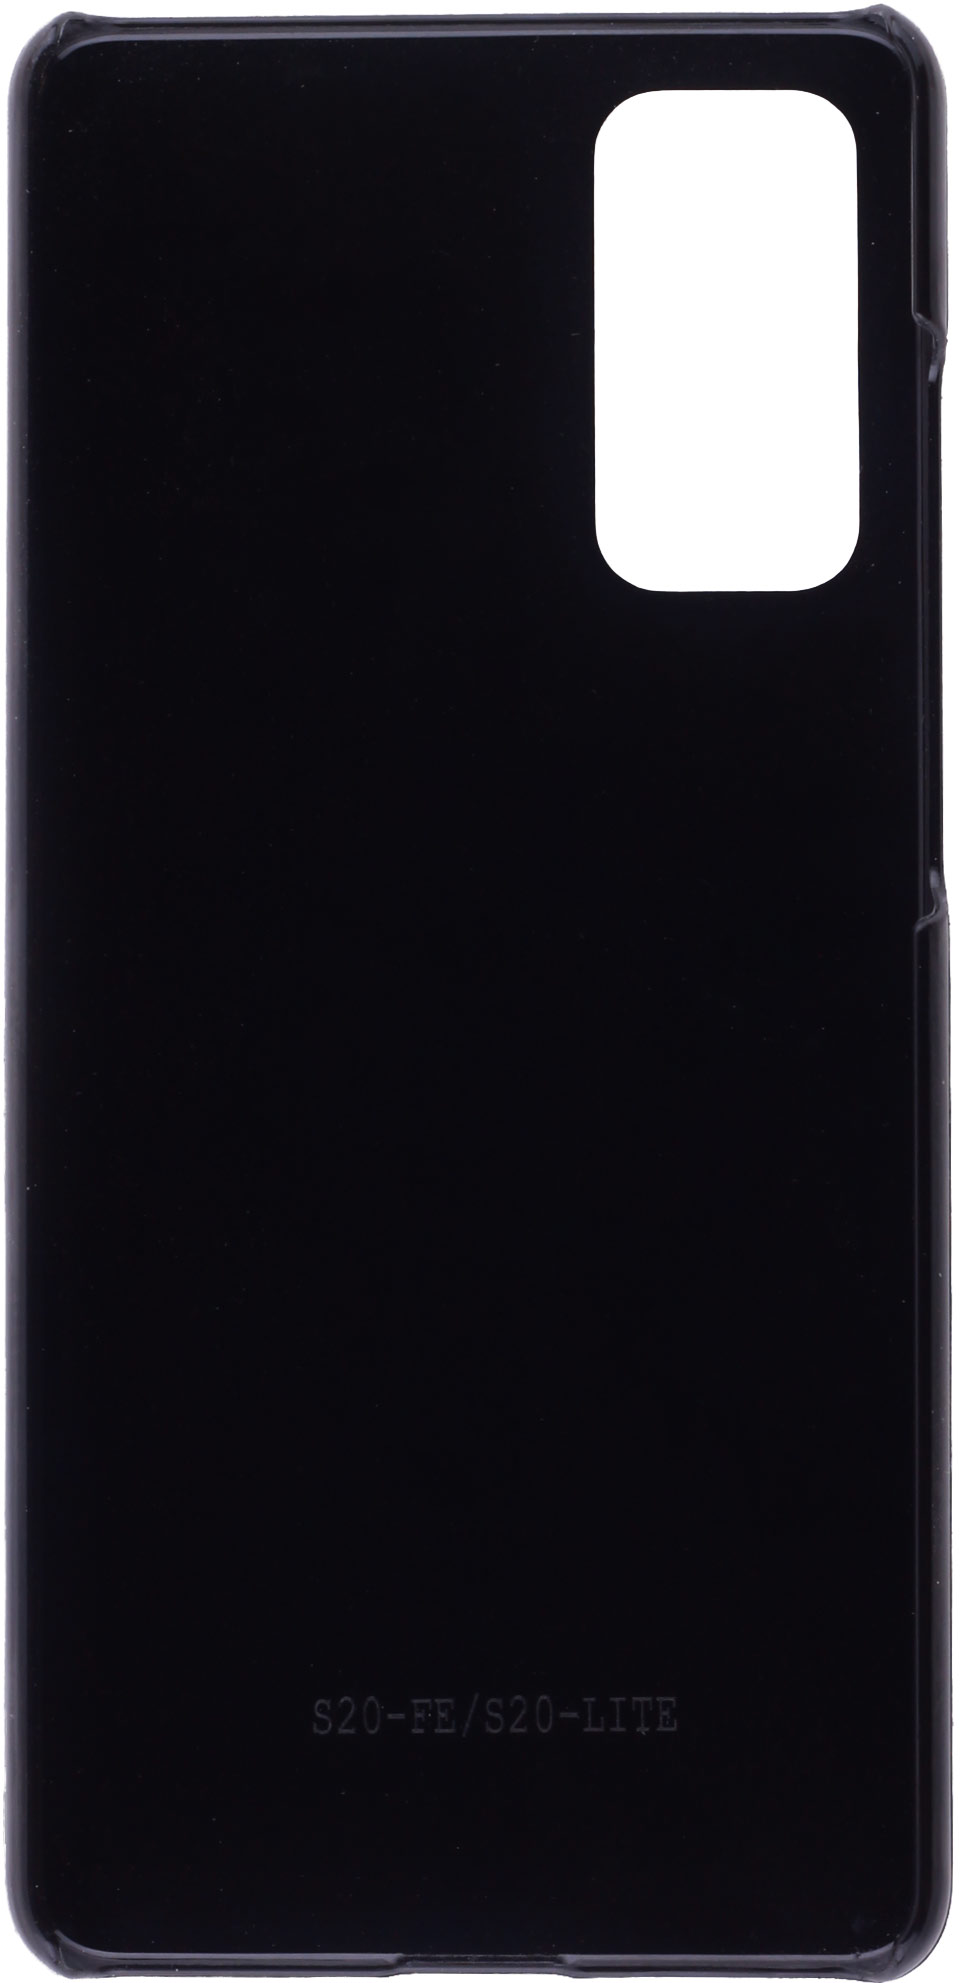 Coque noire personnalisée pour Smartphone Samsung S20 FE/FE 5G/FE